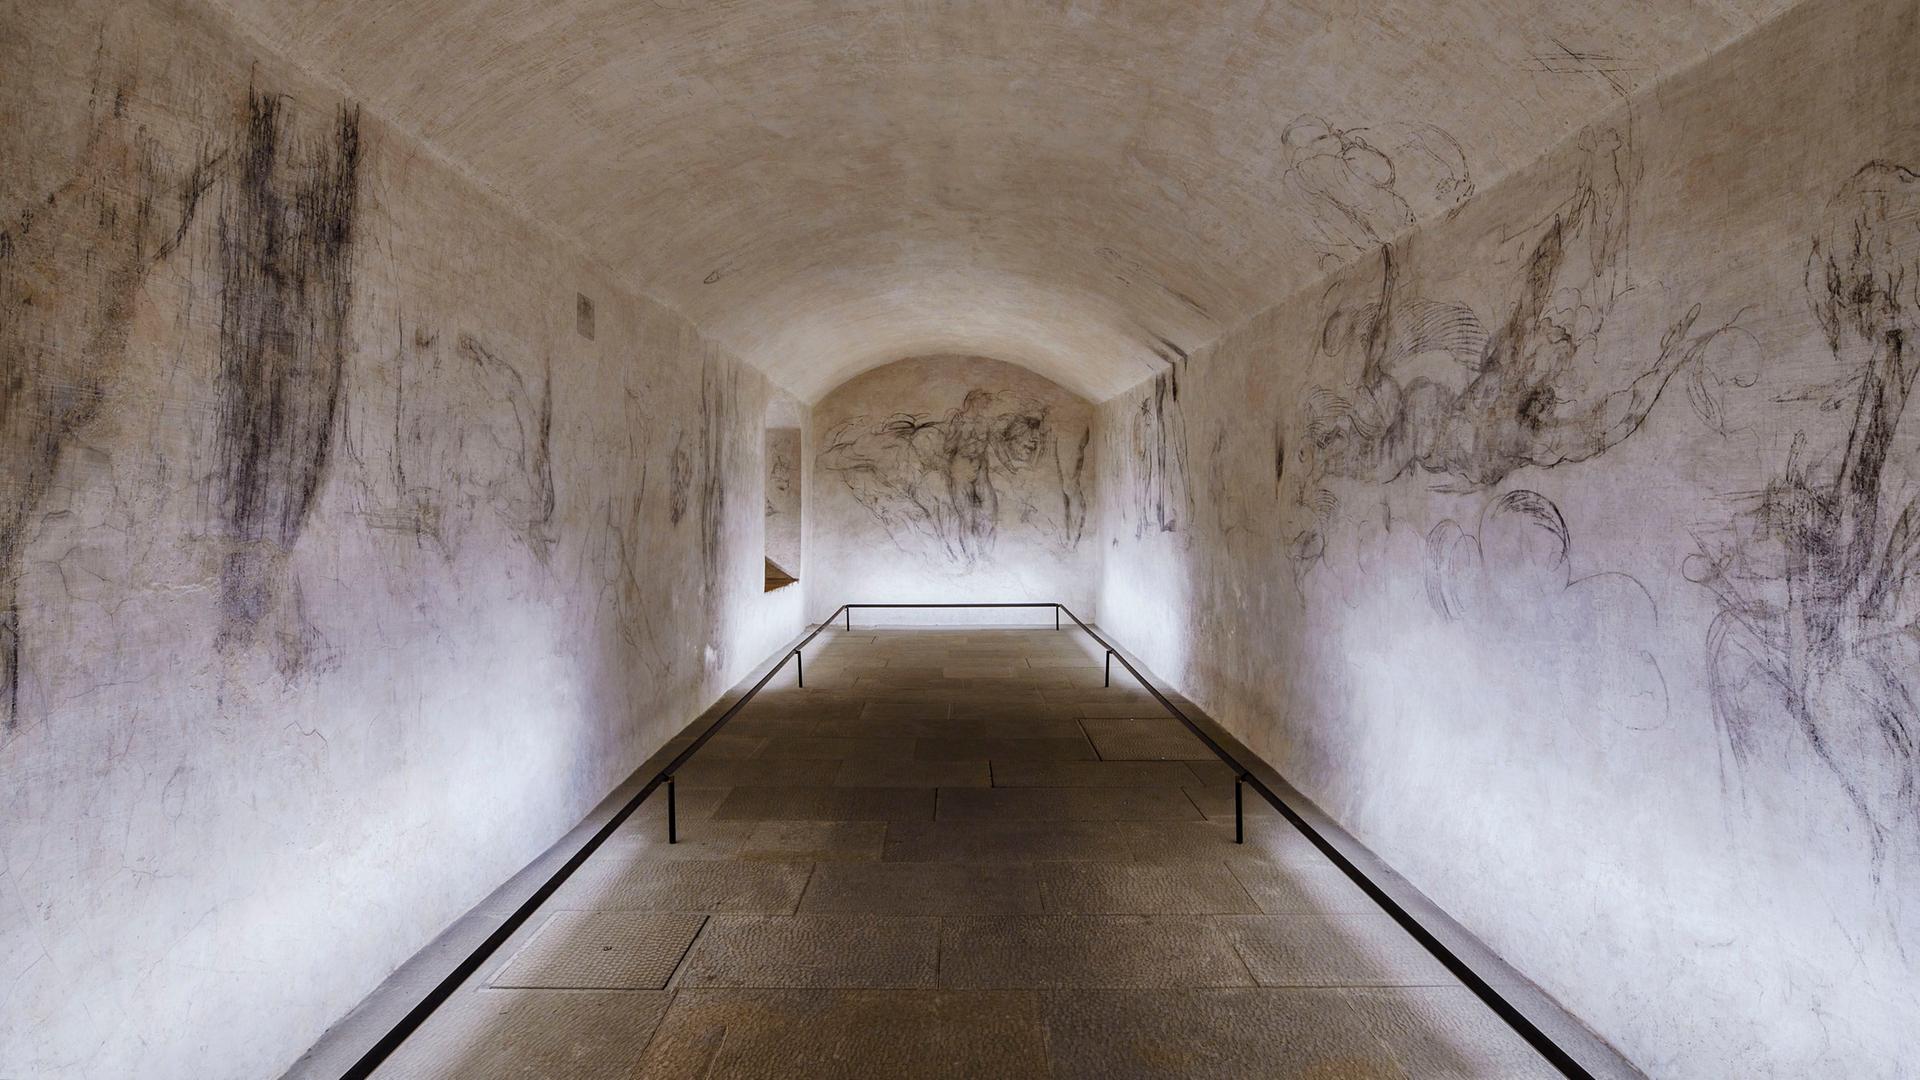 Feine Kohleskizzen, die einige Experten Michelangelo zuschreiben, sind an den Wänden eines Raumes in den Medici-Grabkapellen zu sehen.